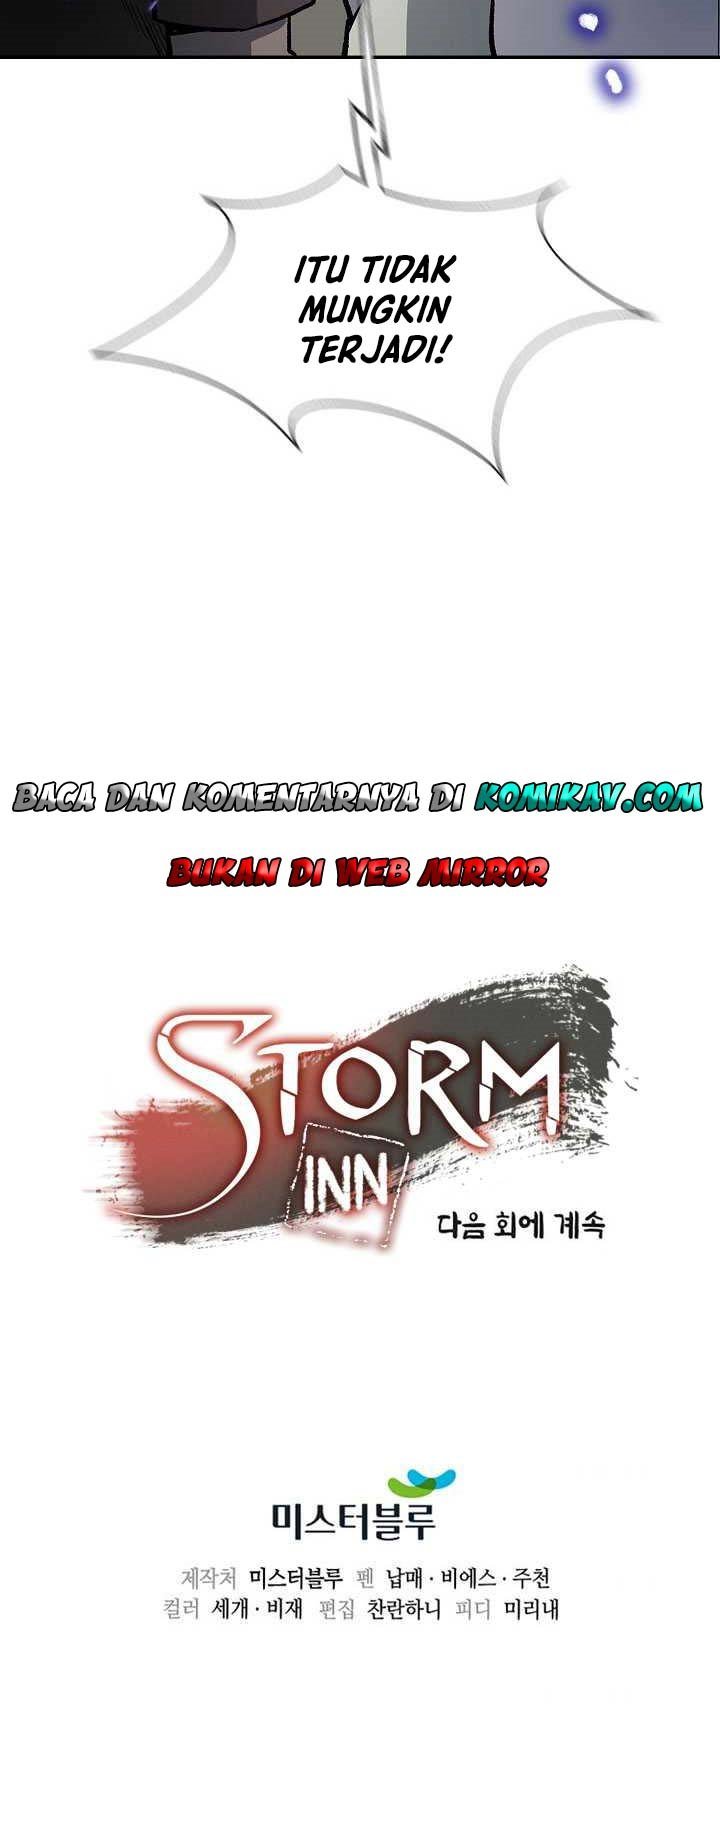 Storm Inn Chapter 45